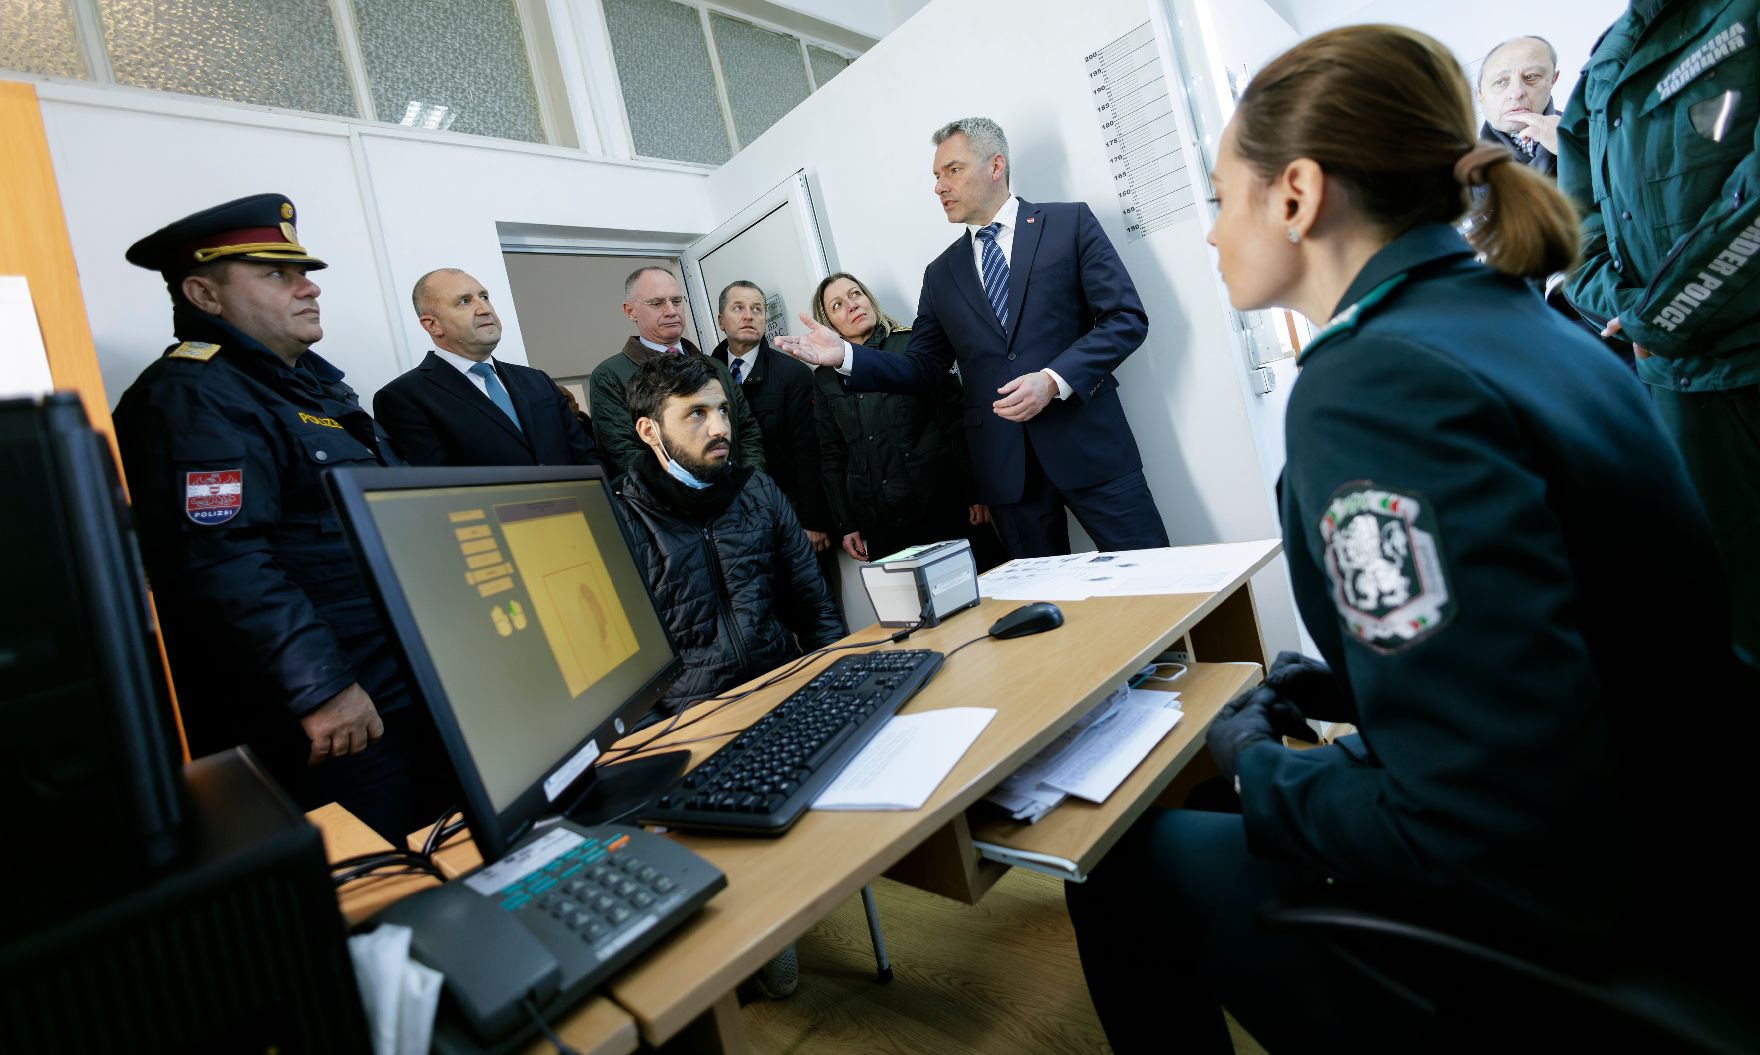 Am 23. Jänner 2023 reiste Bundeskanzler Karl Nehammer gemeinsam mit Innenminister Gerhard Karner zu einem Arbeitsbesuch nach Bulgarien. Im Bild mit dem bulgarischen Präsidenten Rumen Radew bei der Besichtigung des regionalen Koordinationszentrum der Grenzpolizei.